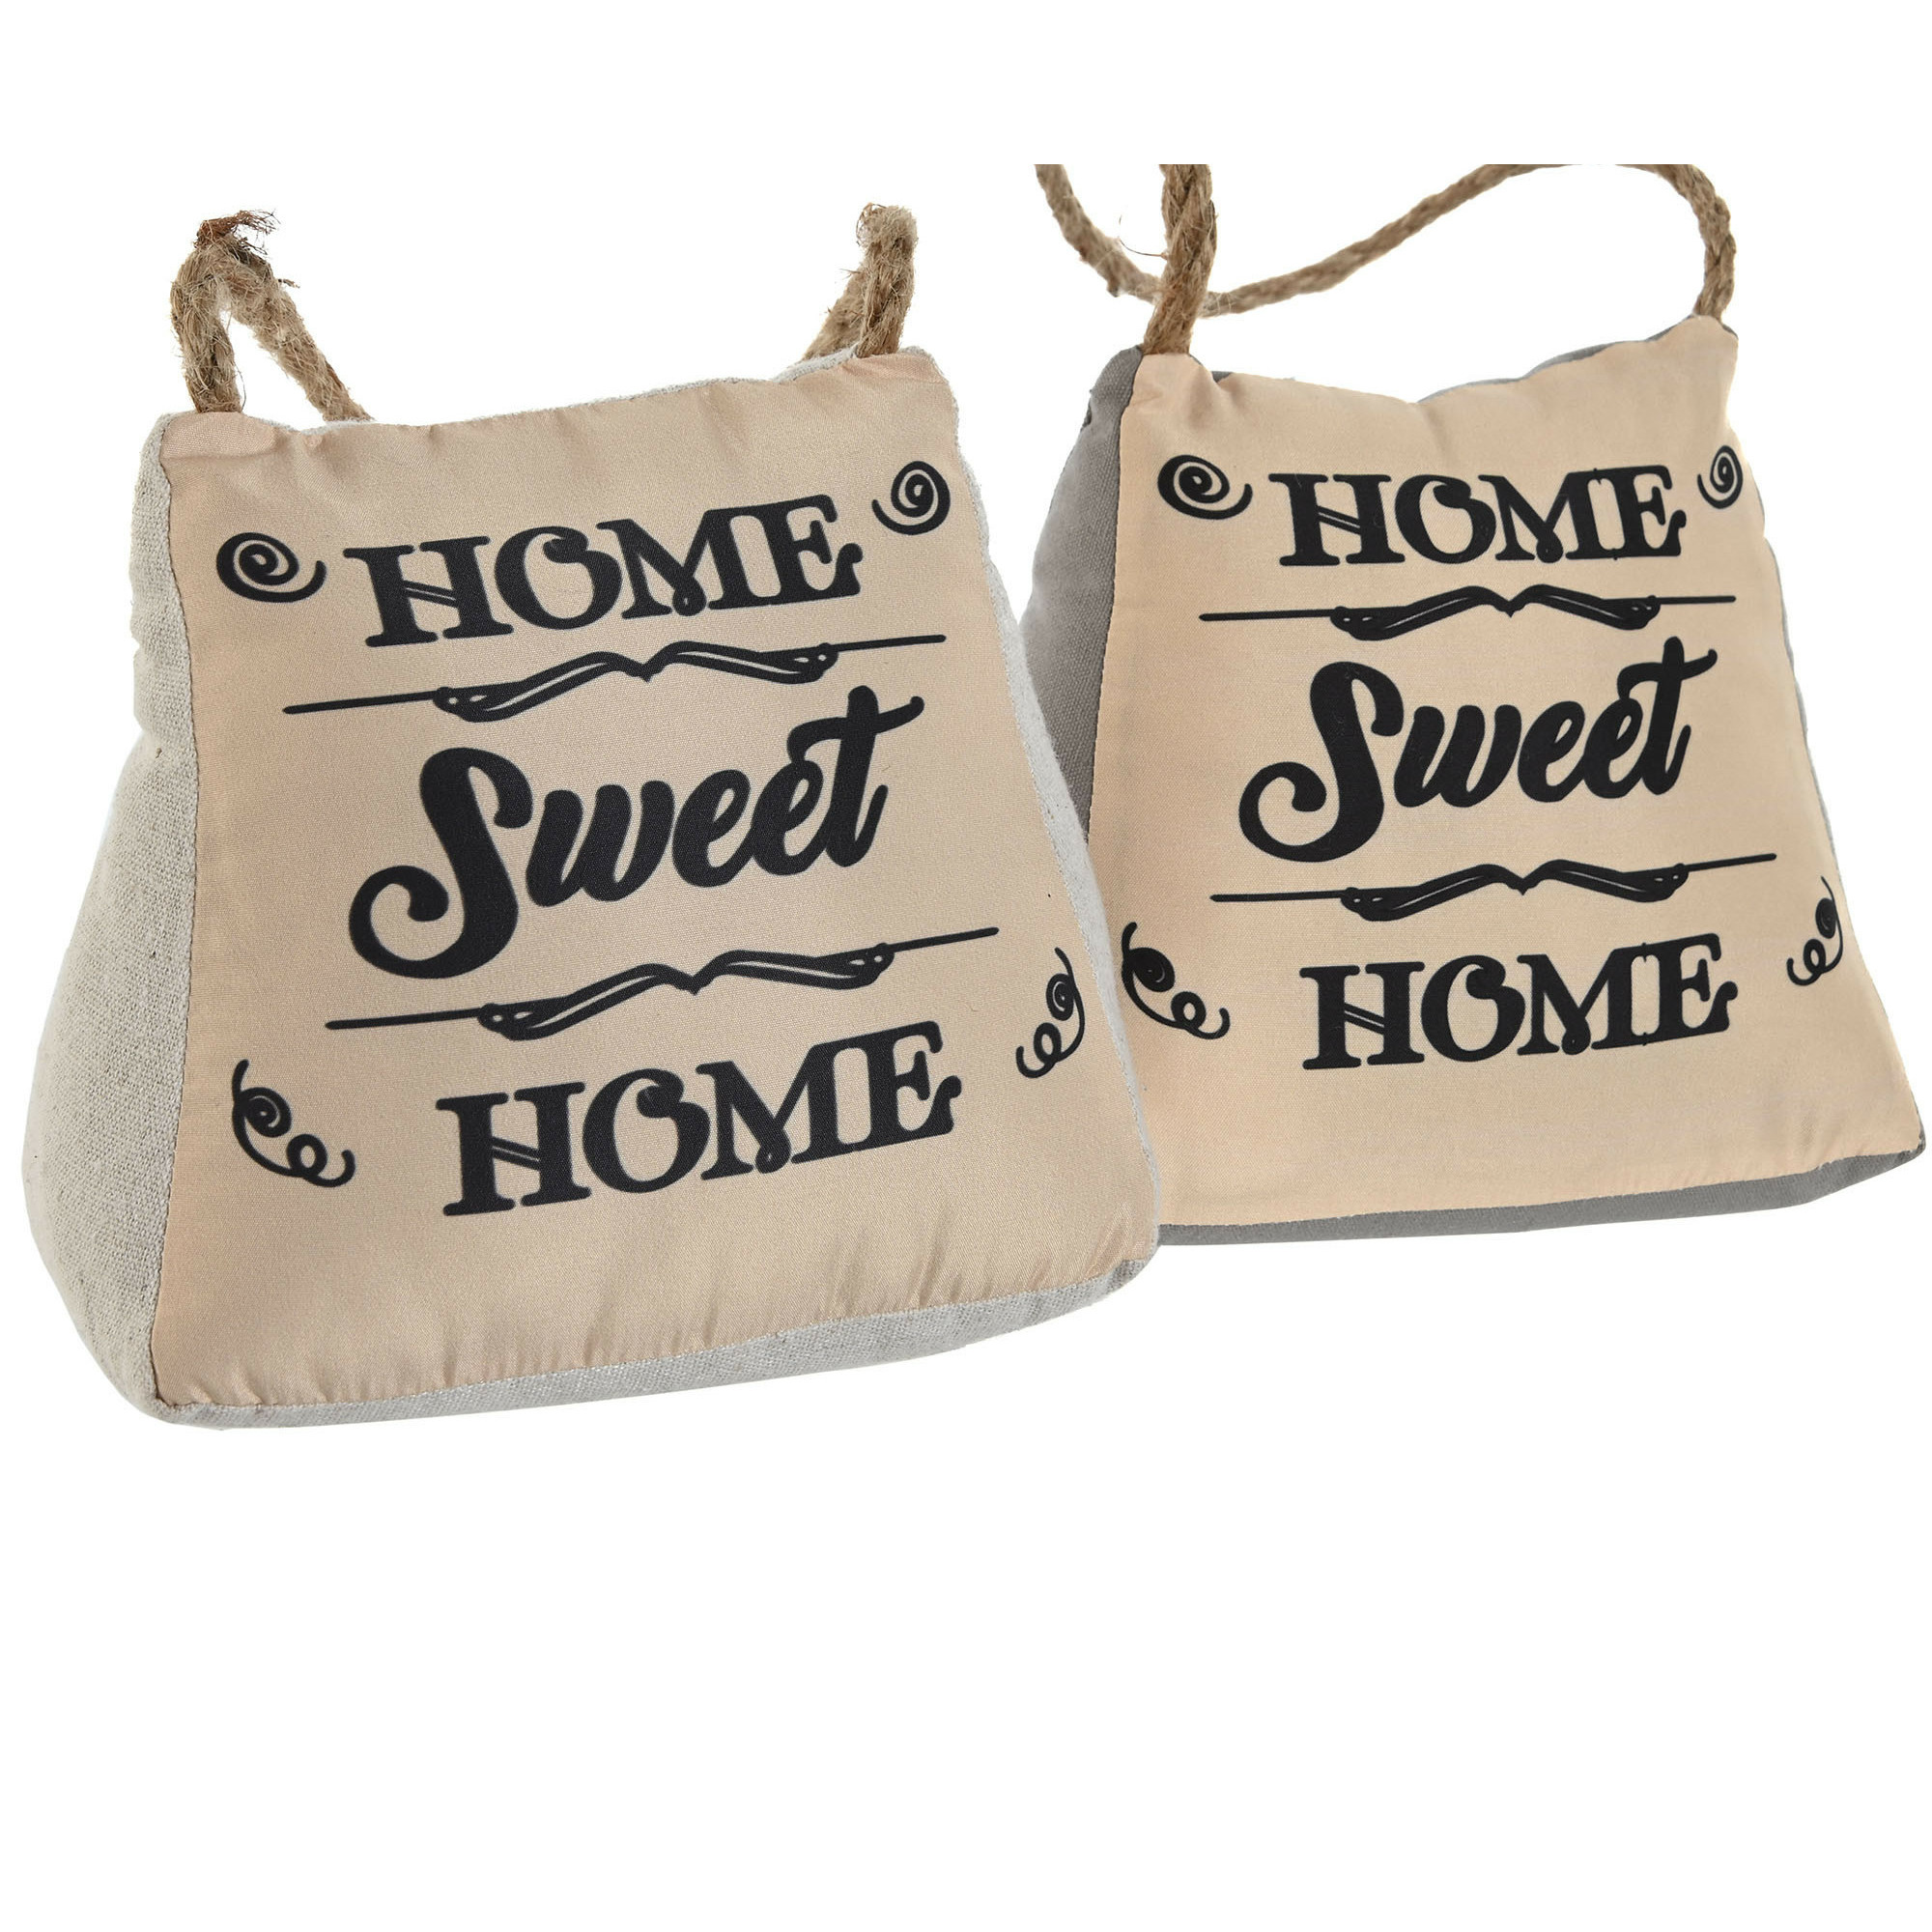 Items Deurstopper Lofty - 2x - 1 kilo - jute/beige - polyester en zand - 17 x 15 cm - Home Sweet Home -